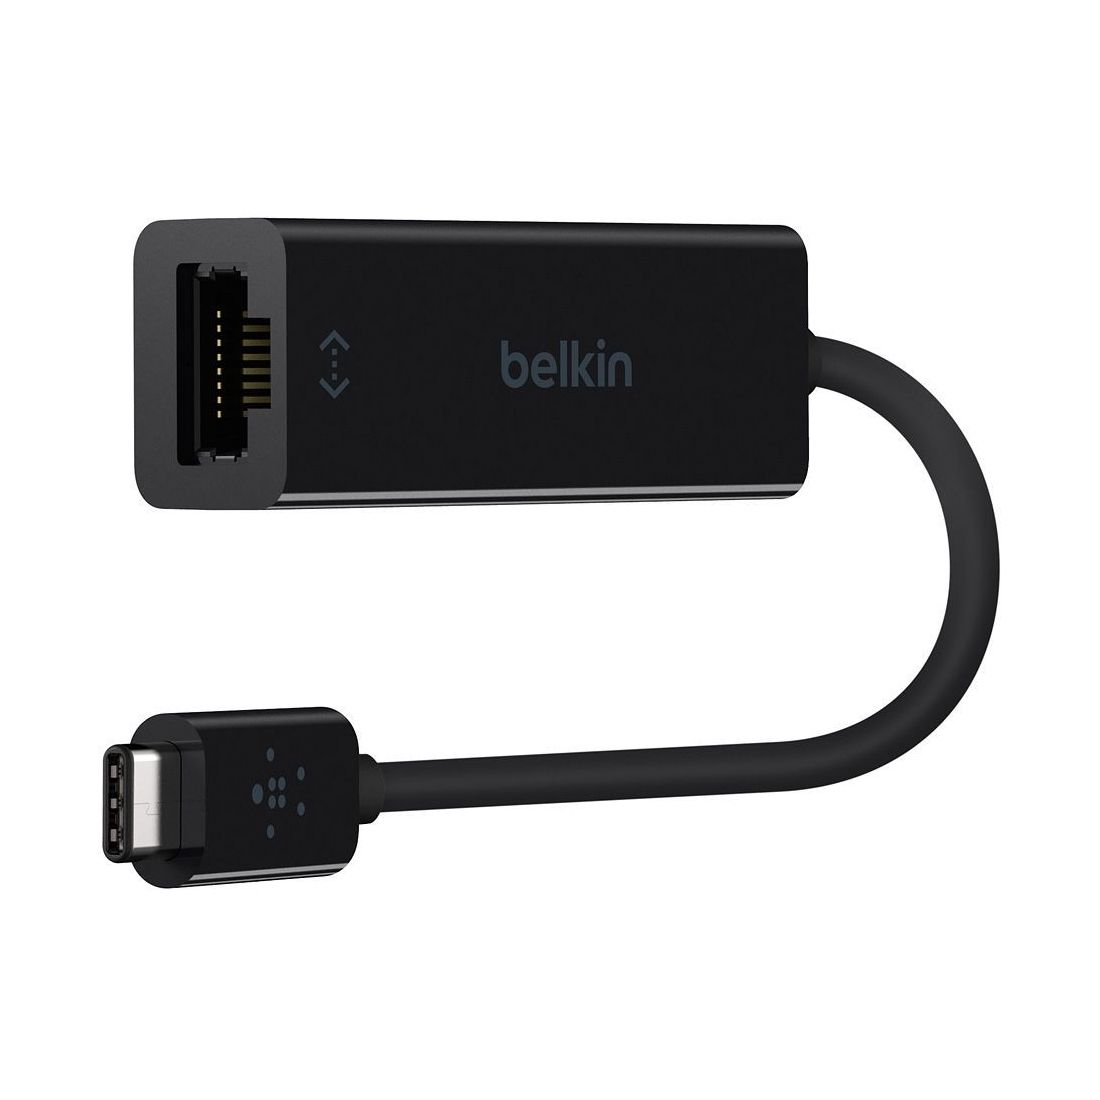 Belkin USB to Gigabit Ethernet Black Adapter